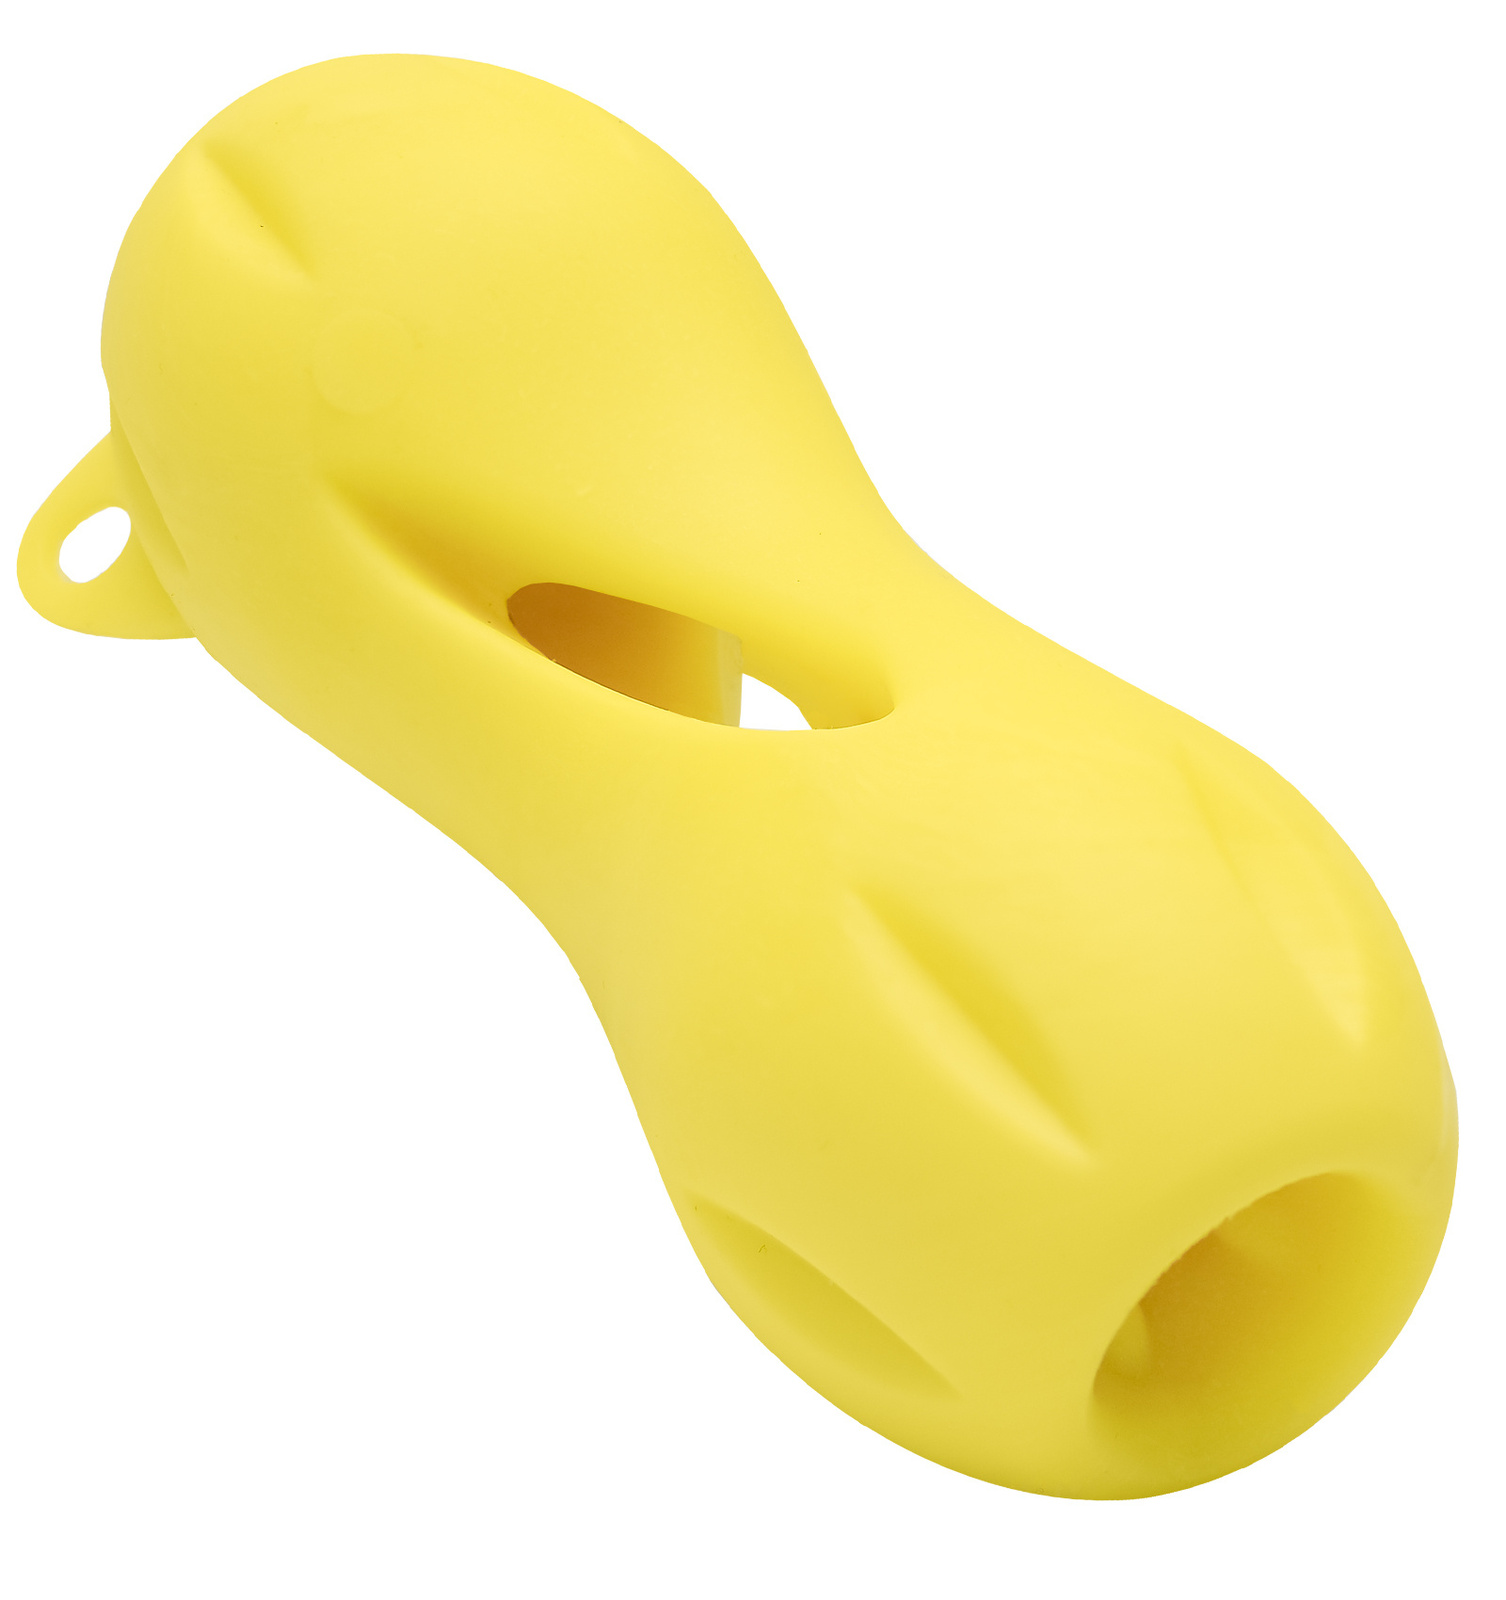 цена PETSHOP игрушки PETSHOP игрушки игрушка для собак Кость резиновая для лакомств, желтая (13х5,5 см)